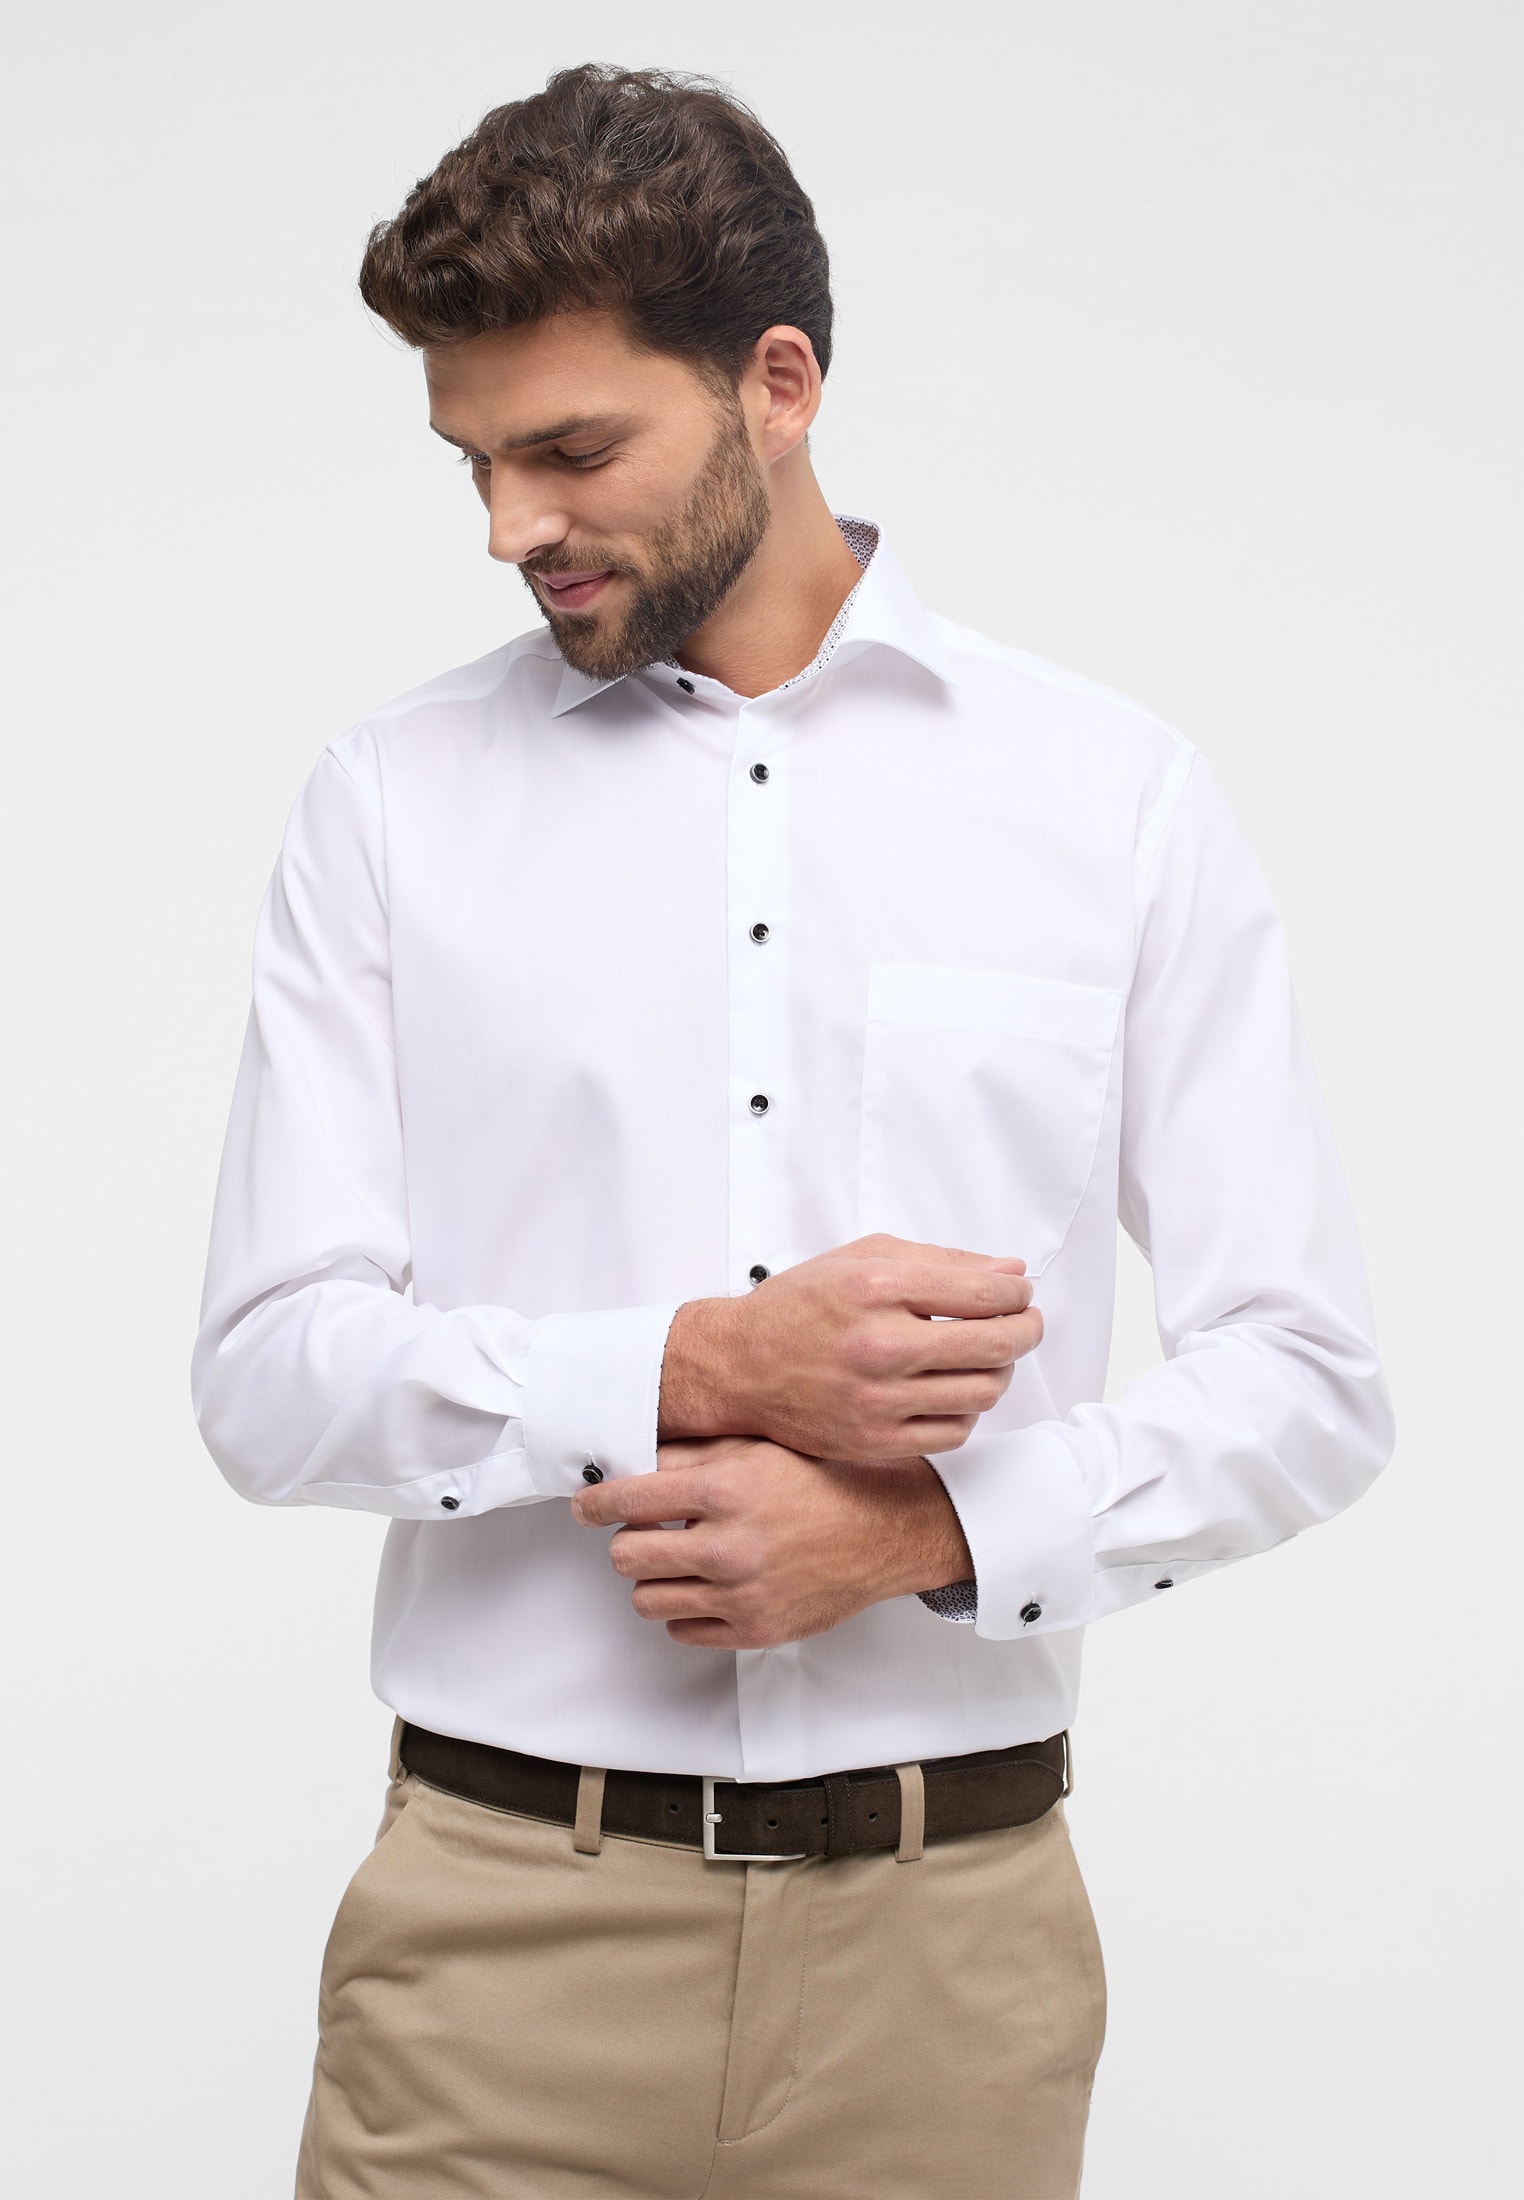 | Shirt verkürzter | in weiß (59 44 COMFORT FIT weiß unifarben 1SH12862-00-01-44-59 Original cm) | | Arm